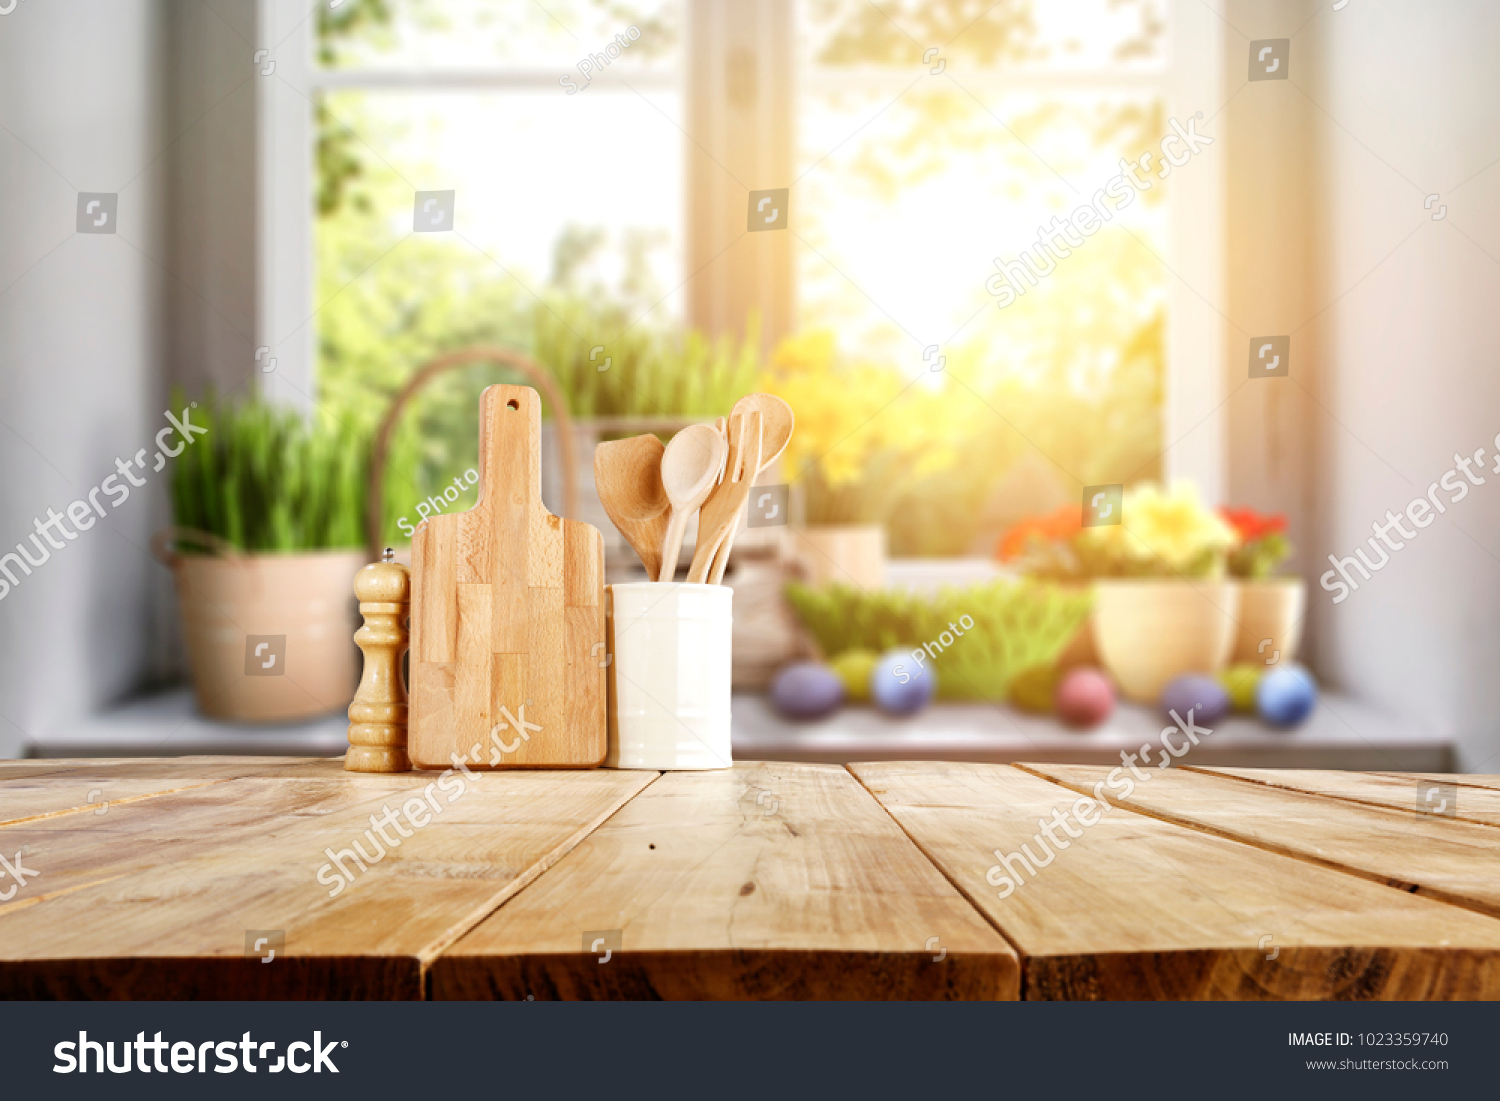 Velikonoční stůl s jarními květinami ve slunné dubnové kuchyni #1023359740